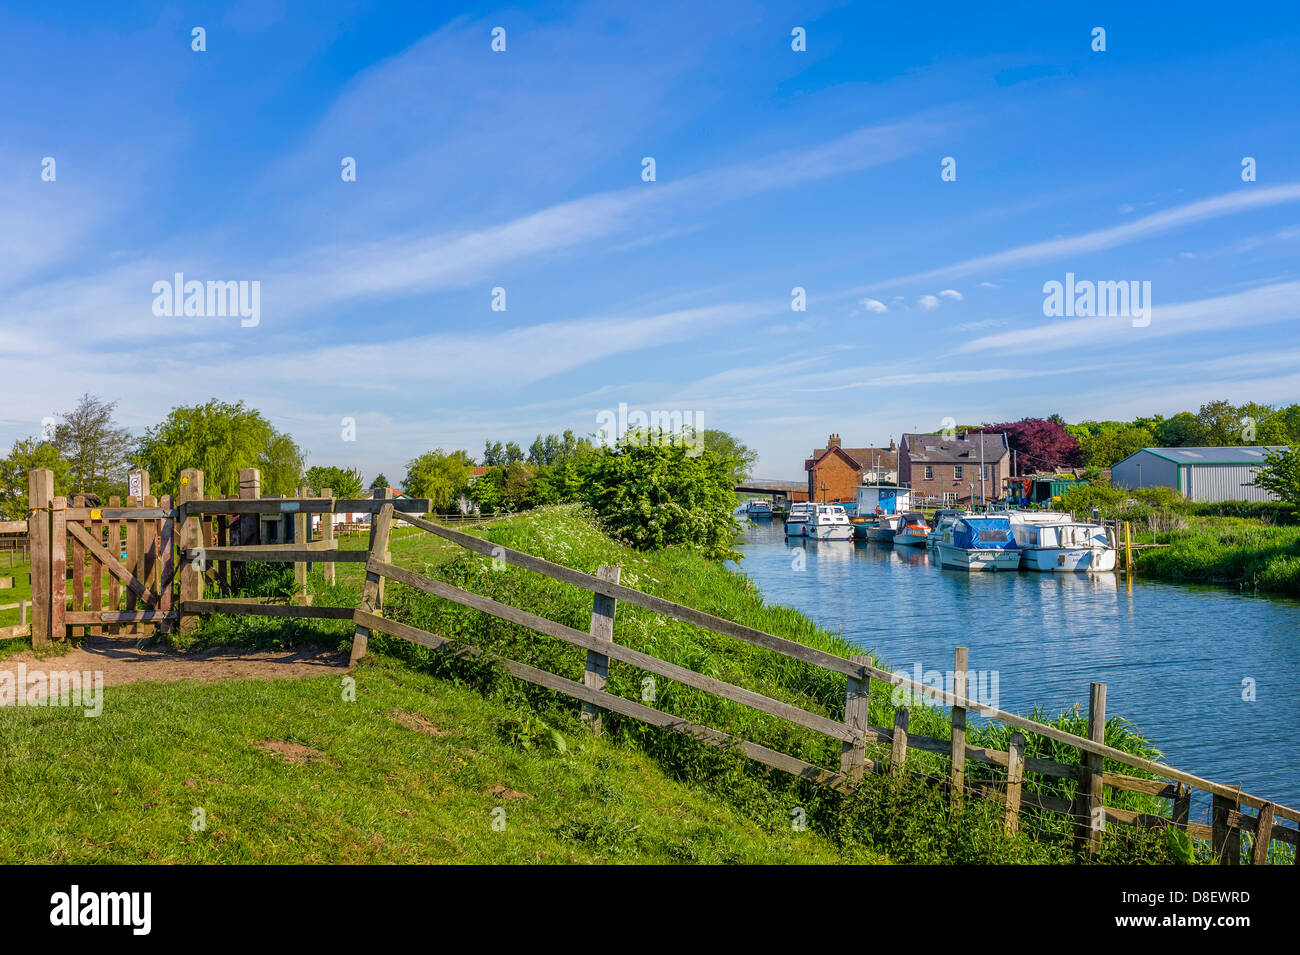 Fluss-Rumpf mit Boote vertäut am Ufer mit Fechten und Häusern an einem sonnigen Tag mit blauem Himmel, Yorkshire, Großbritannien. Stockfoto